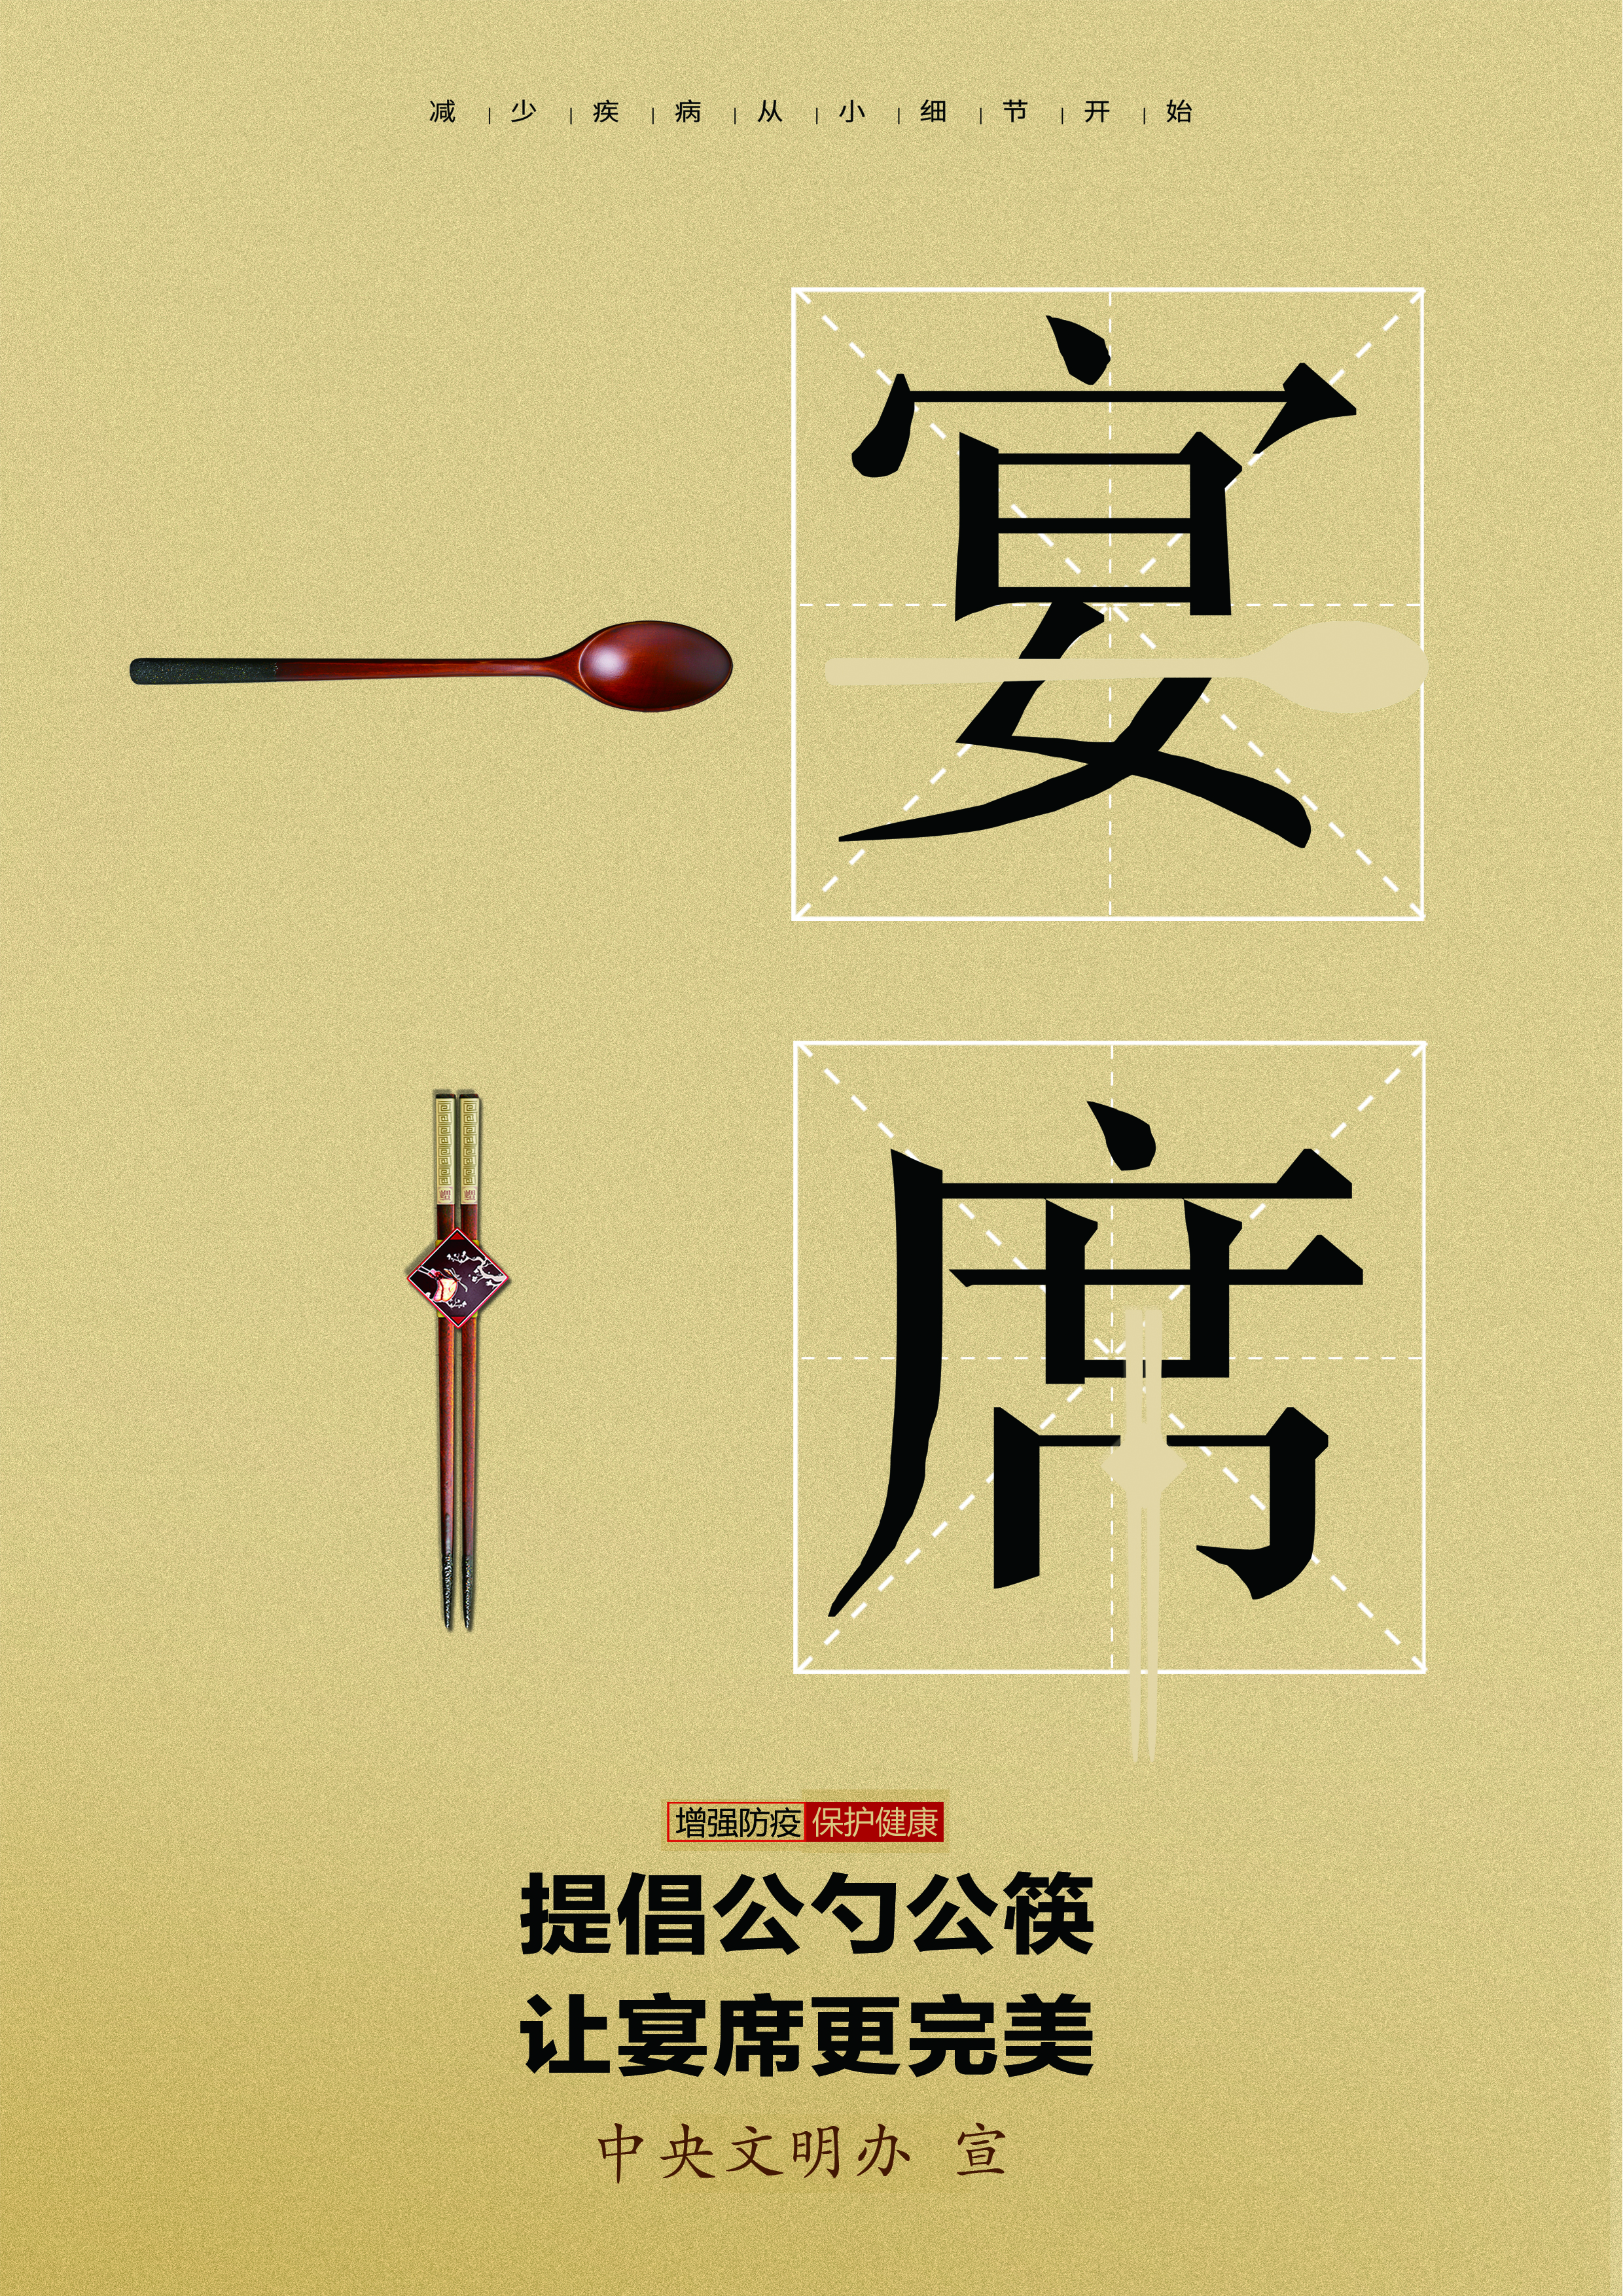 提倡公筷公勺 让宴席更完美